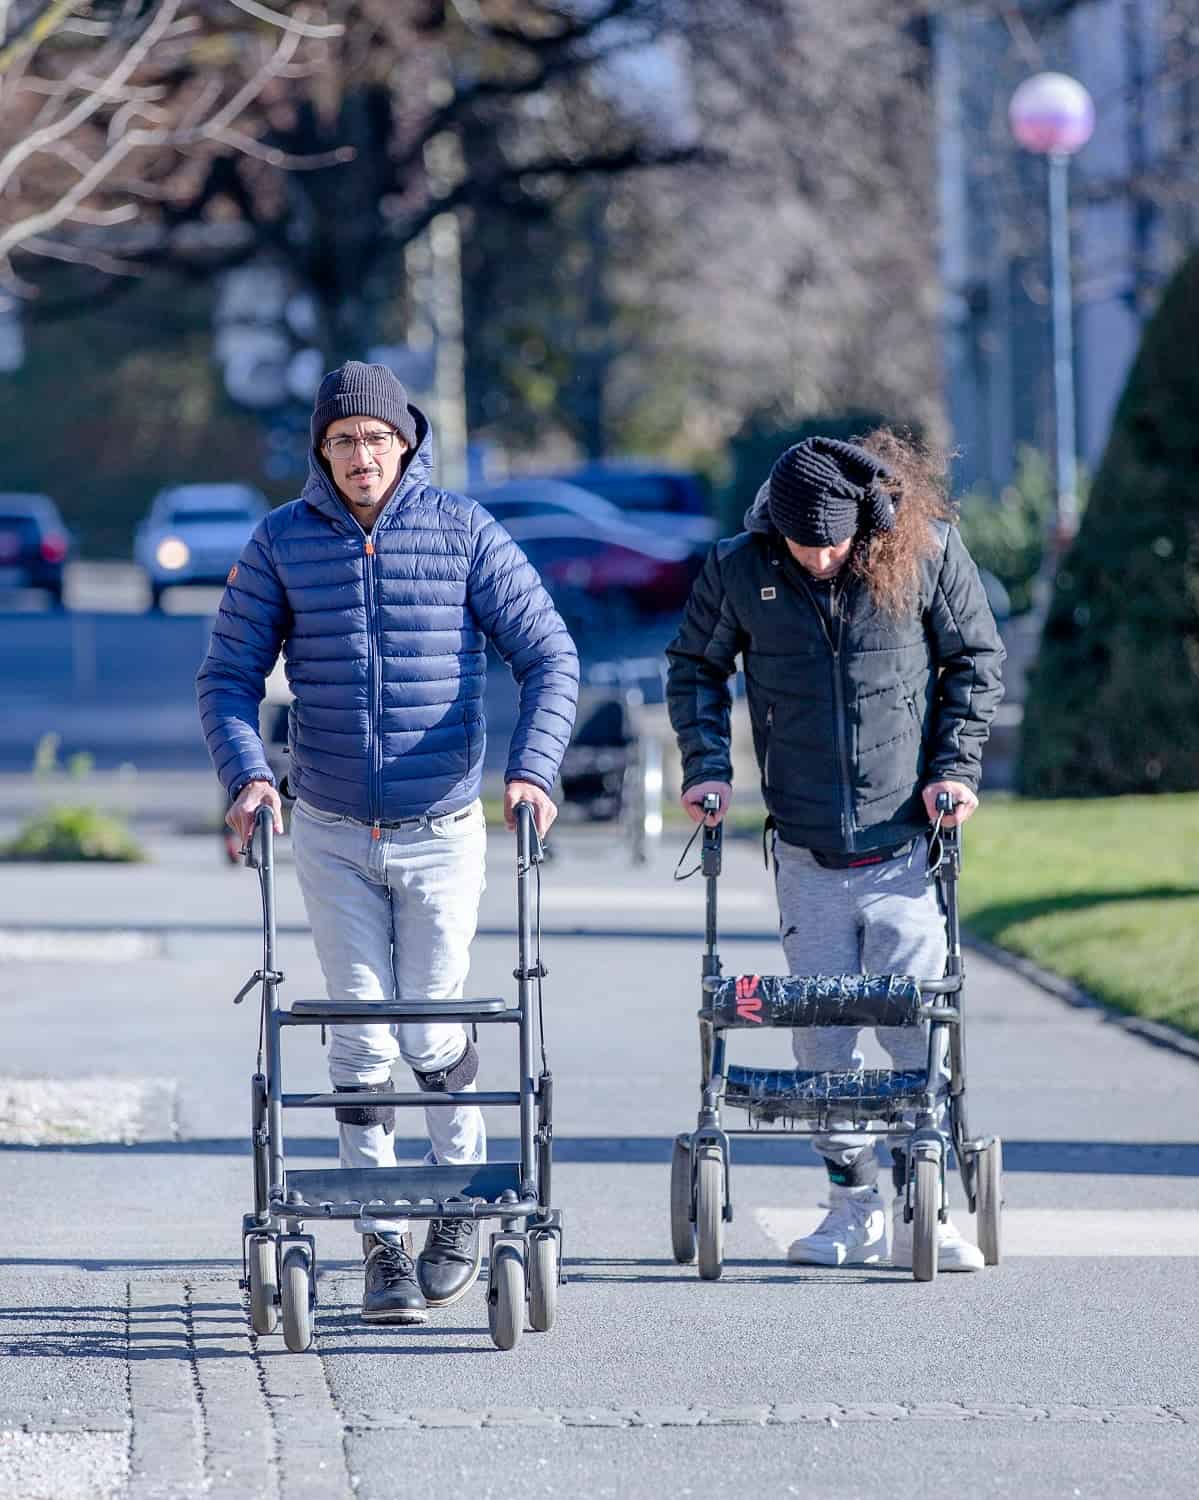 يمشي مريضان مصابان بالشلل على الرصيف بمساعدة جهاز للمشي بعد تلقي علاج التحفيز الكهربائي